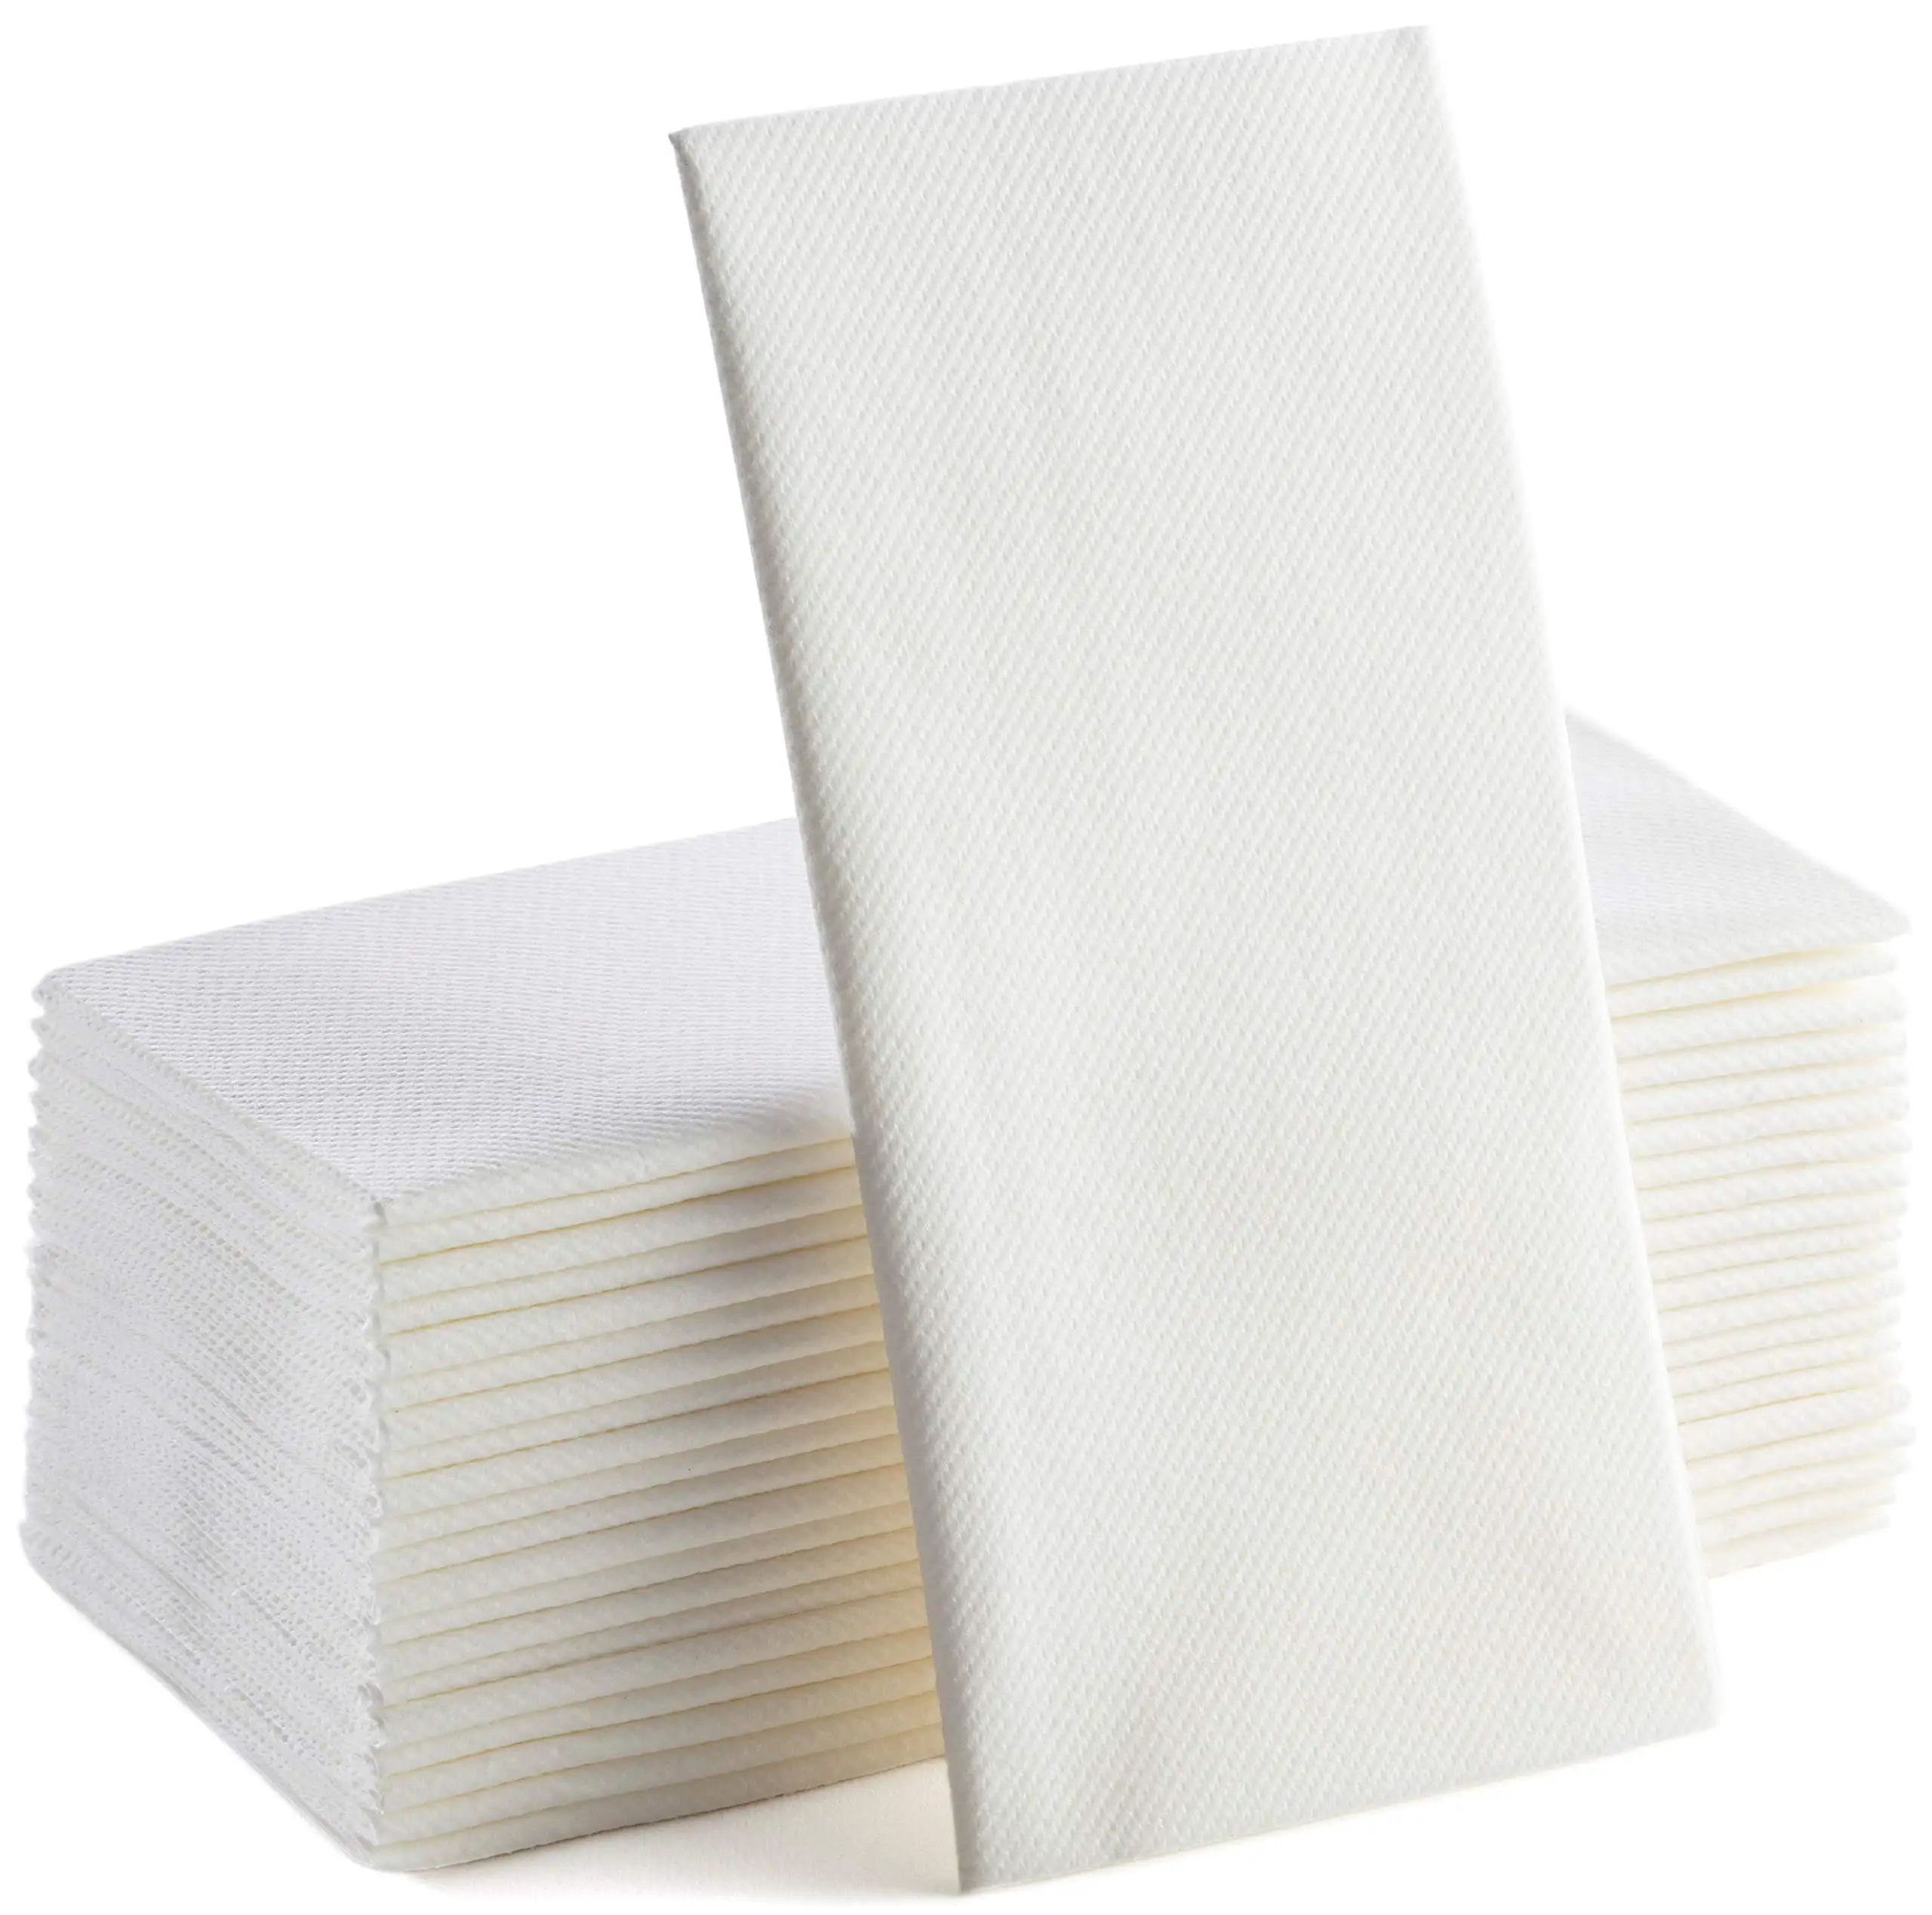 Servilletas de papel de restaurante de pliegue bajo baratas (Airlaid) - 40x40 cm